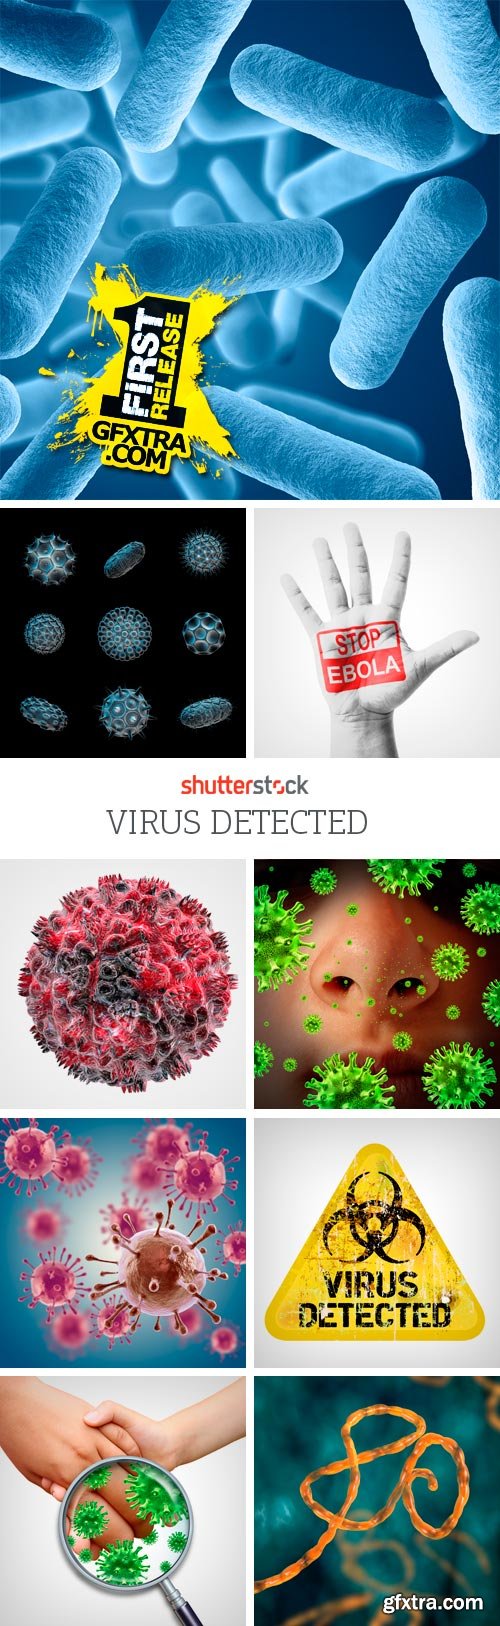 Amazing SS - Virus Detected, 25xJPGs